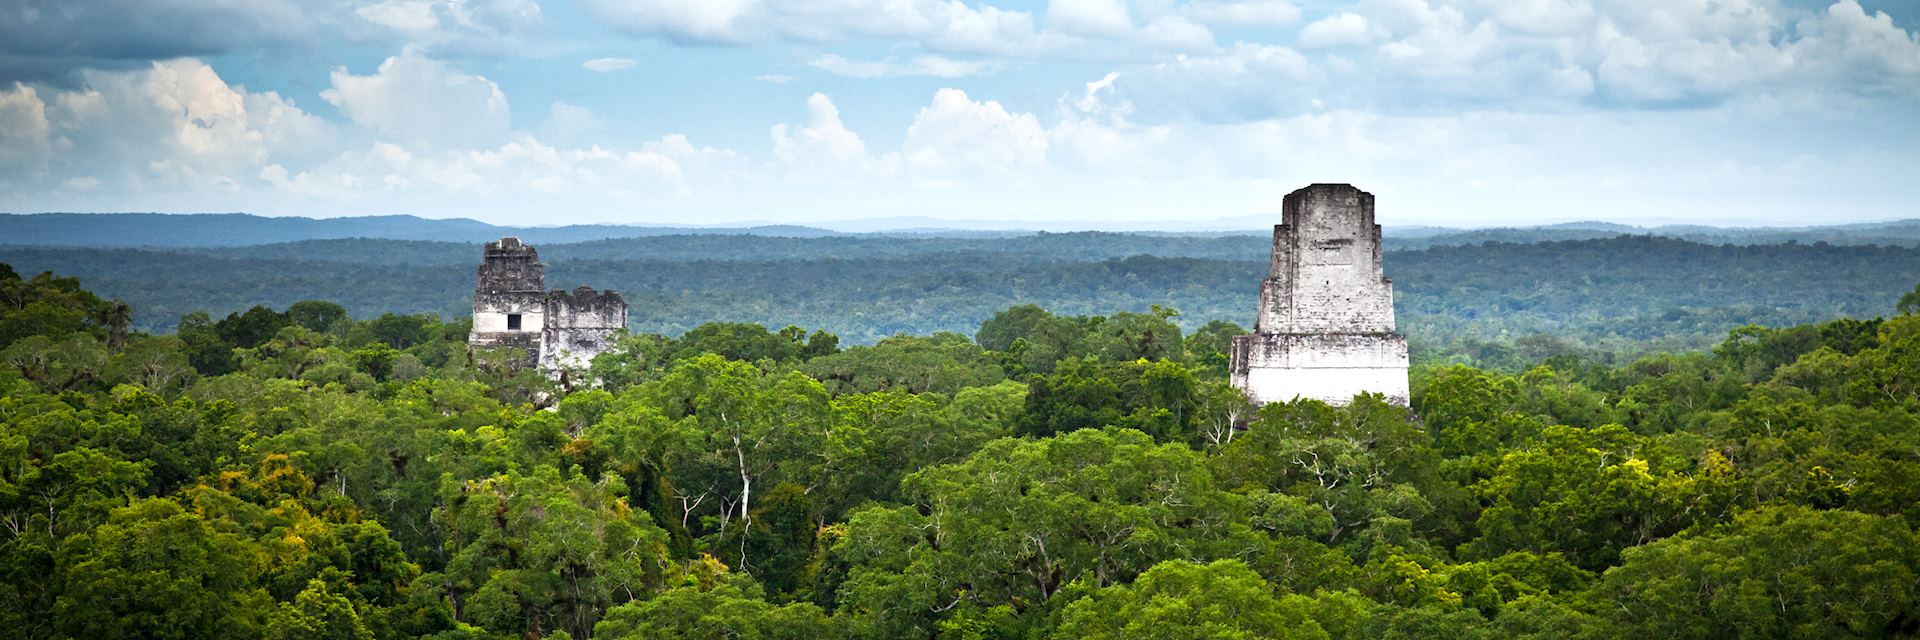 Maya ruins in Tikal National Park